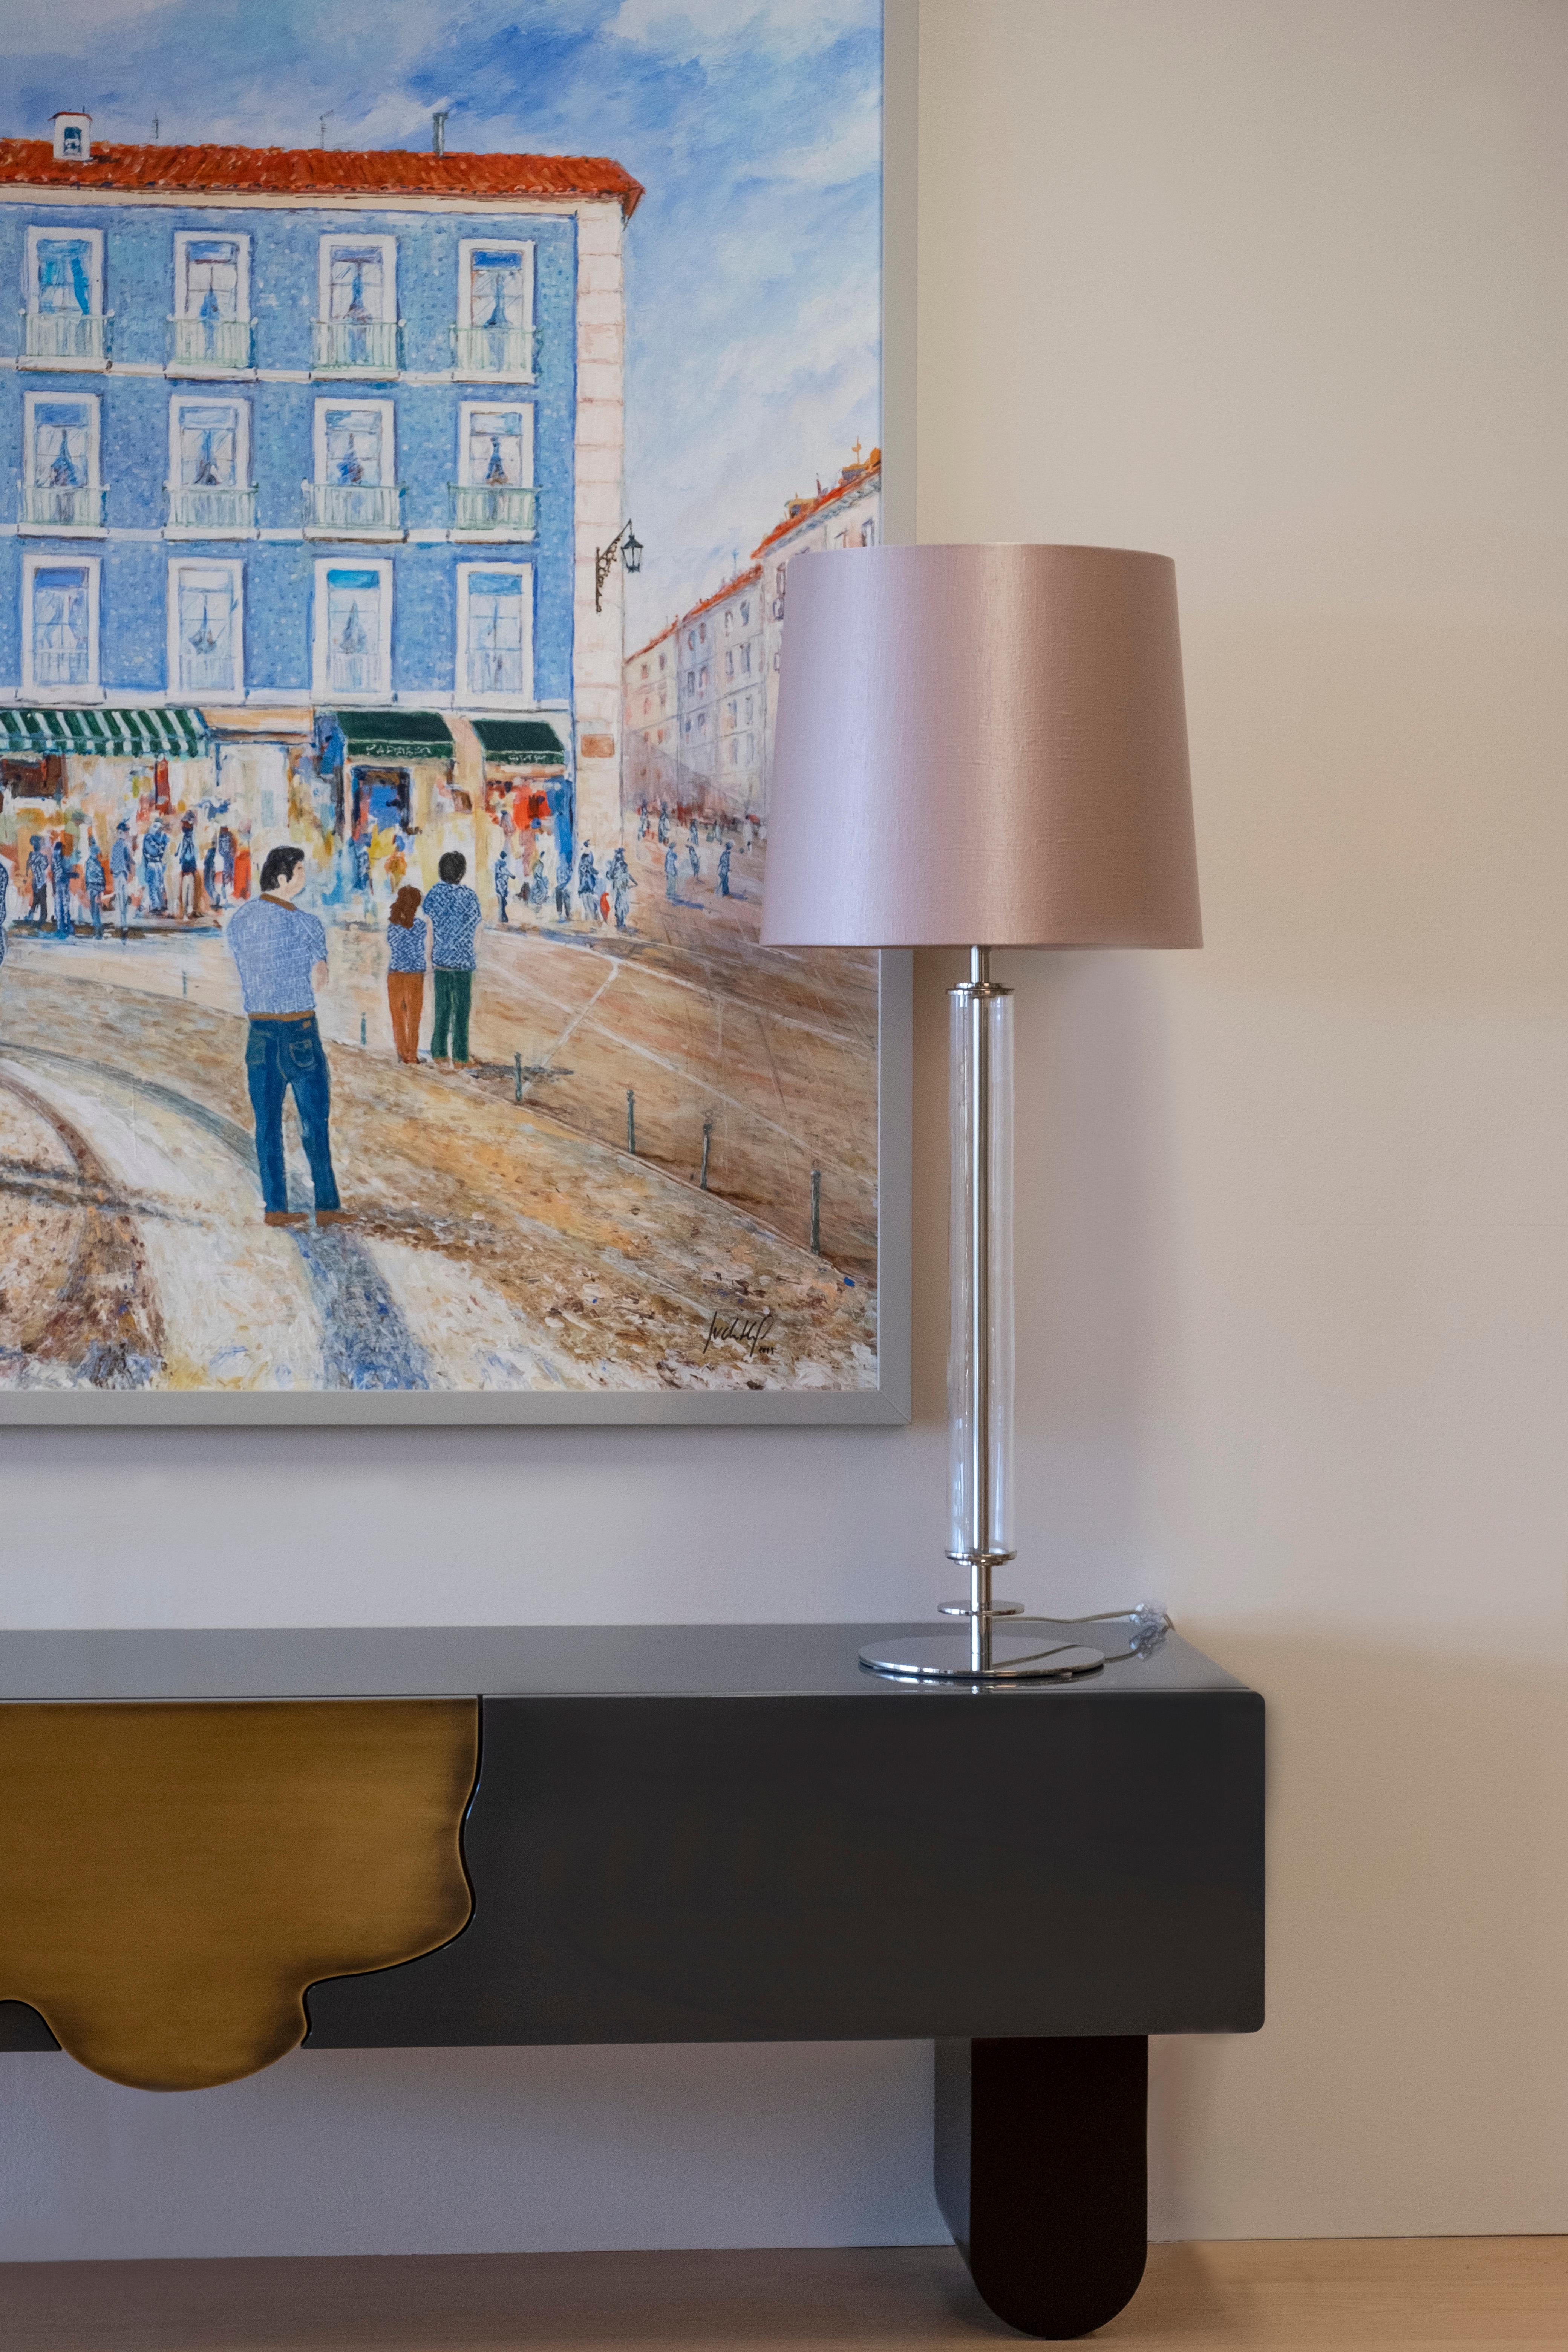 Lot de 2 lampes de table Dumont, Collection S, fabriquées à la main au Portugal - Europe par GF Modern.

La luxueuse lampe de table Art déco Dumont crée une ambiance subliminale pour une vie extraordinaire. Le détail cylindrique du verre transparent